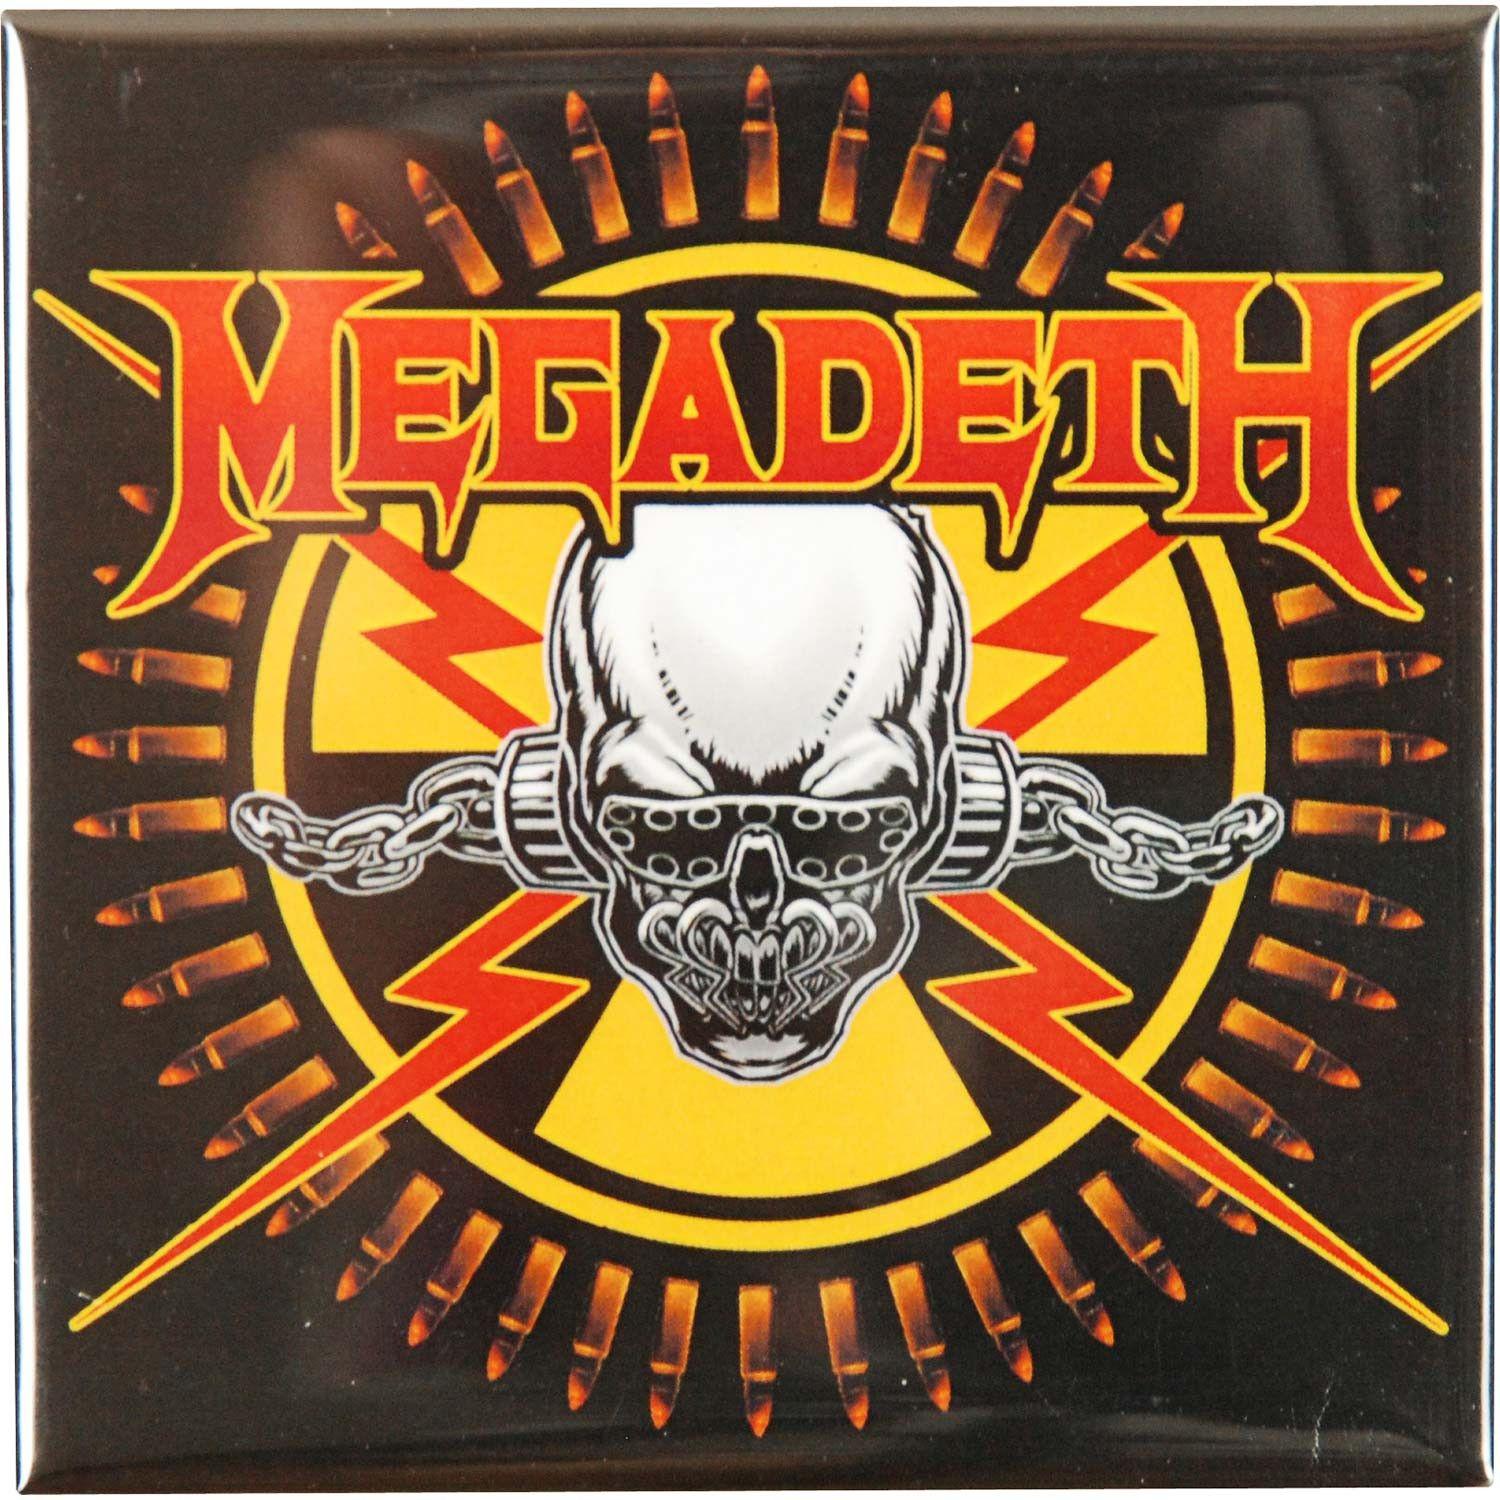 Megadeth Skull Logo - Megadeth Skull & Bullets Magnet - Rockabilia